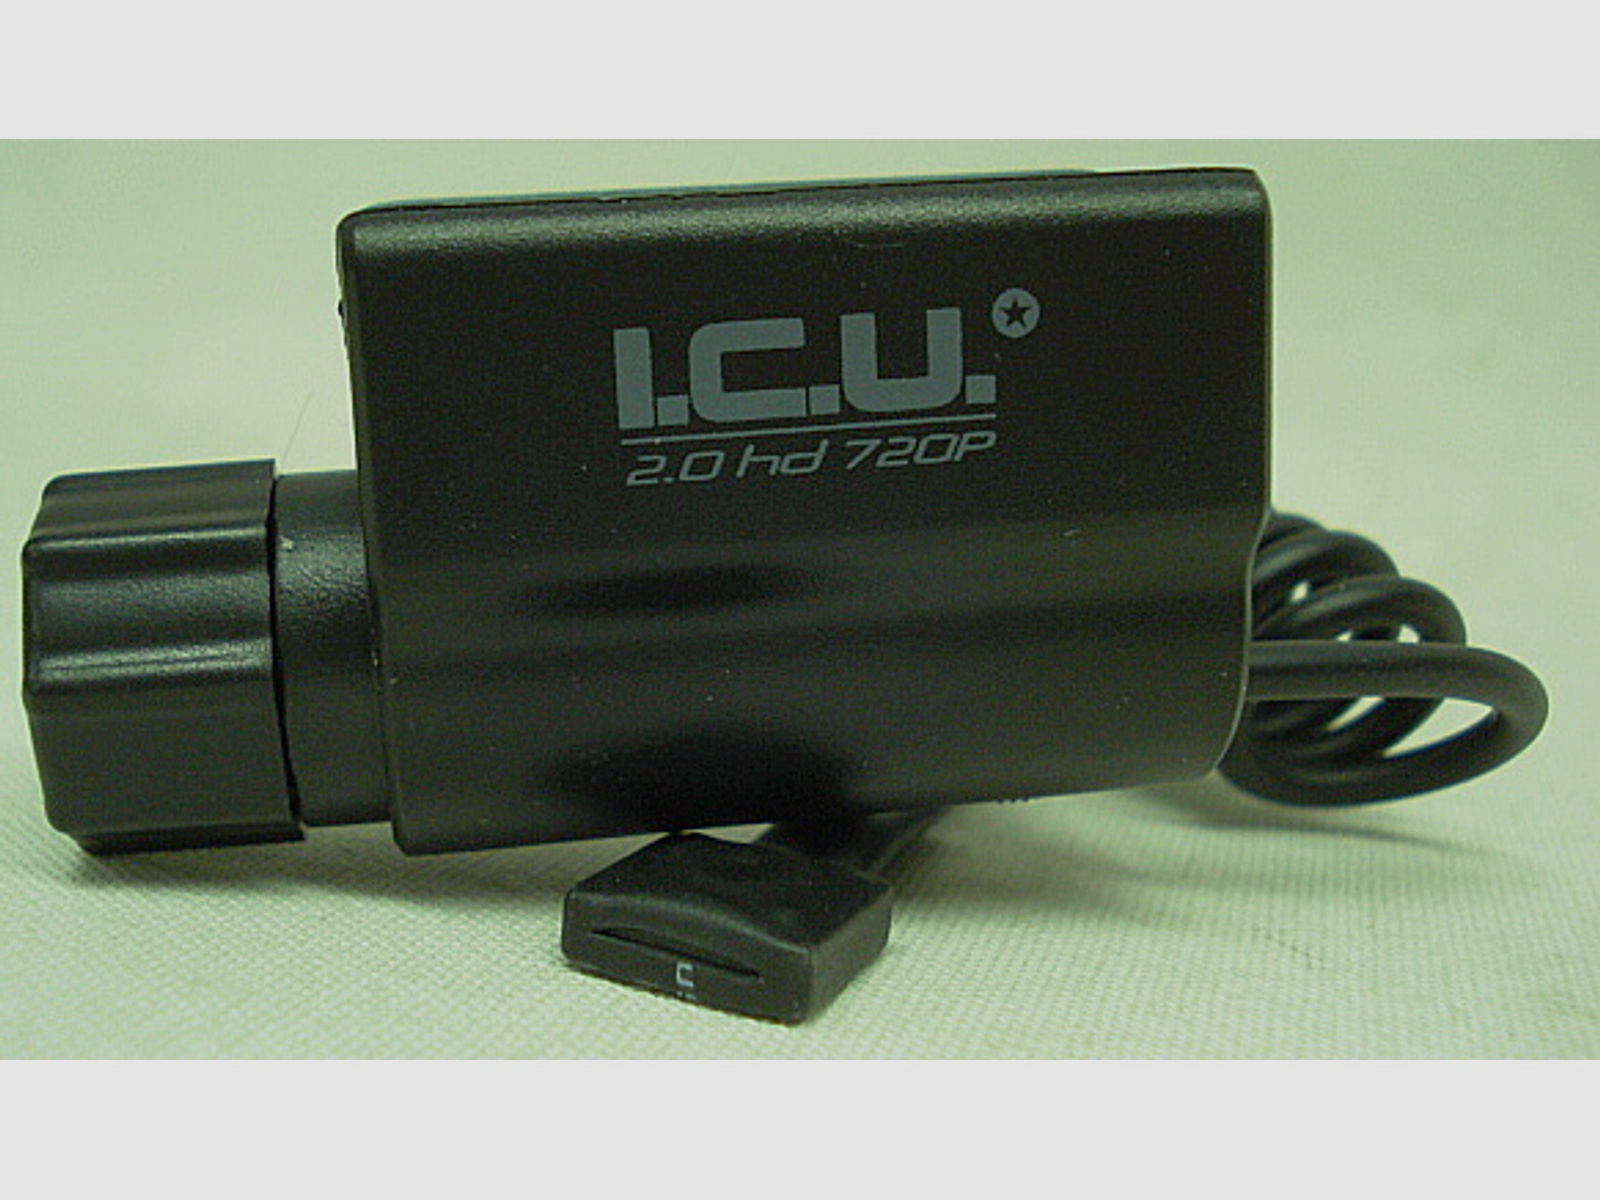 Action Kamera I.C.U. 2.0 HD - für Railschiene, 5MP,